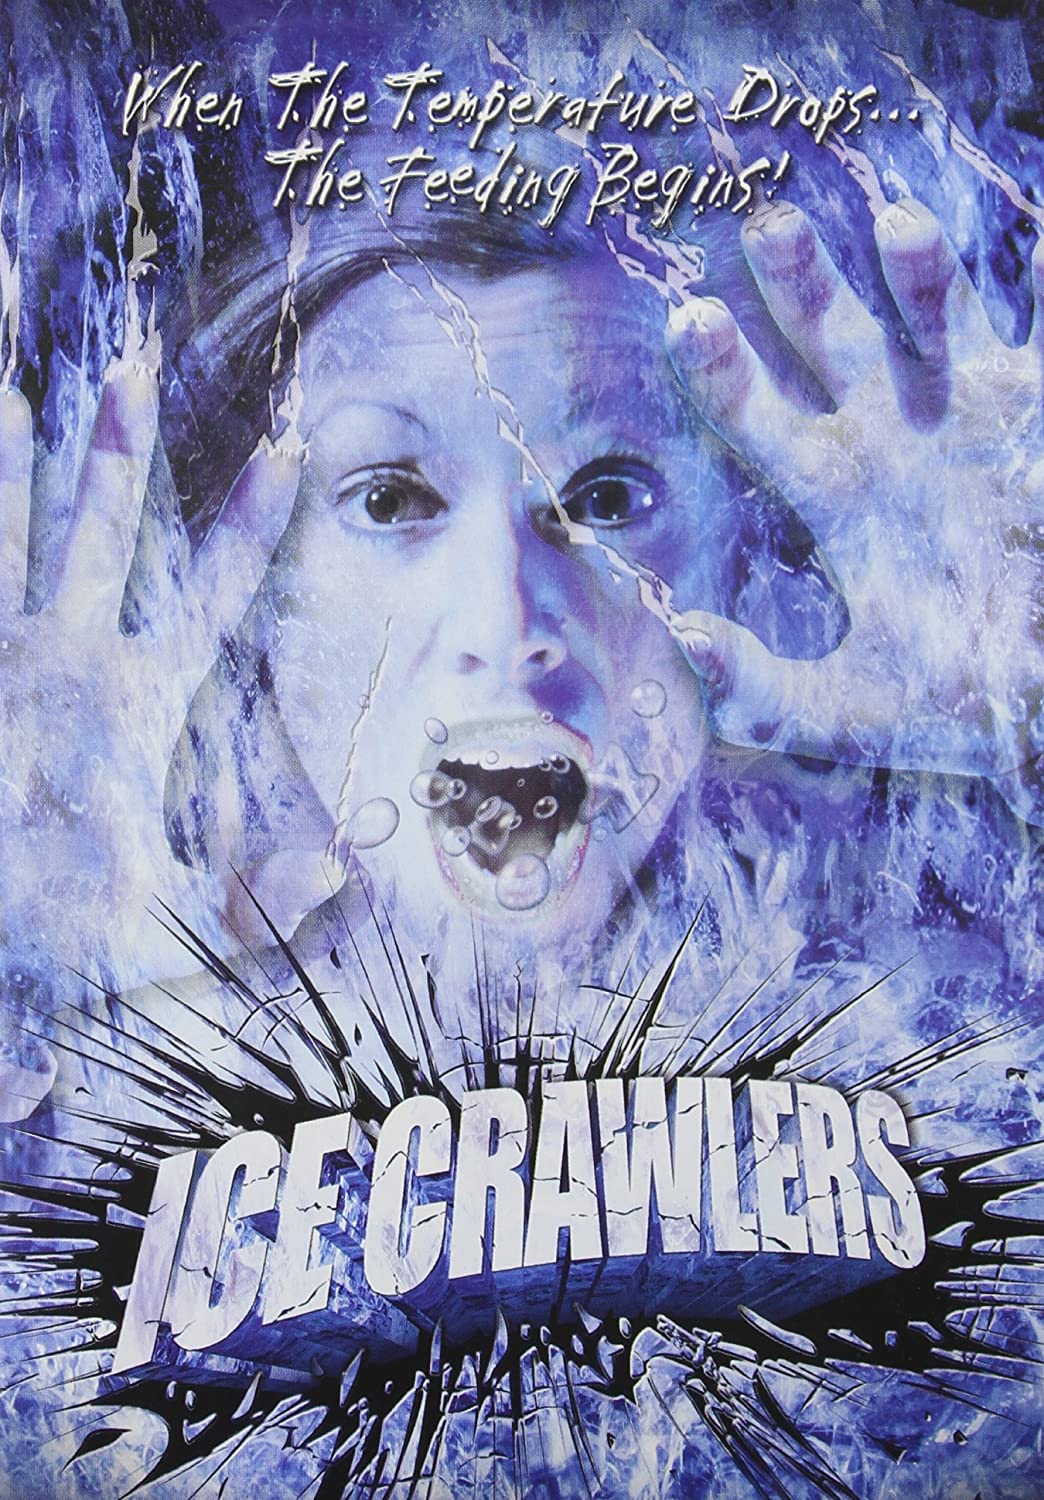 ICE CRAWLERS DVD